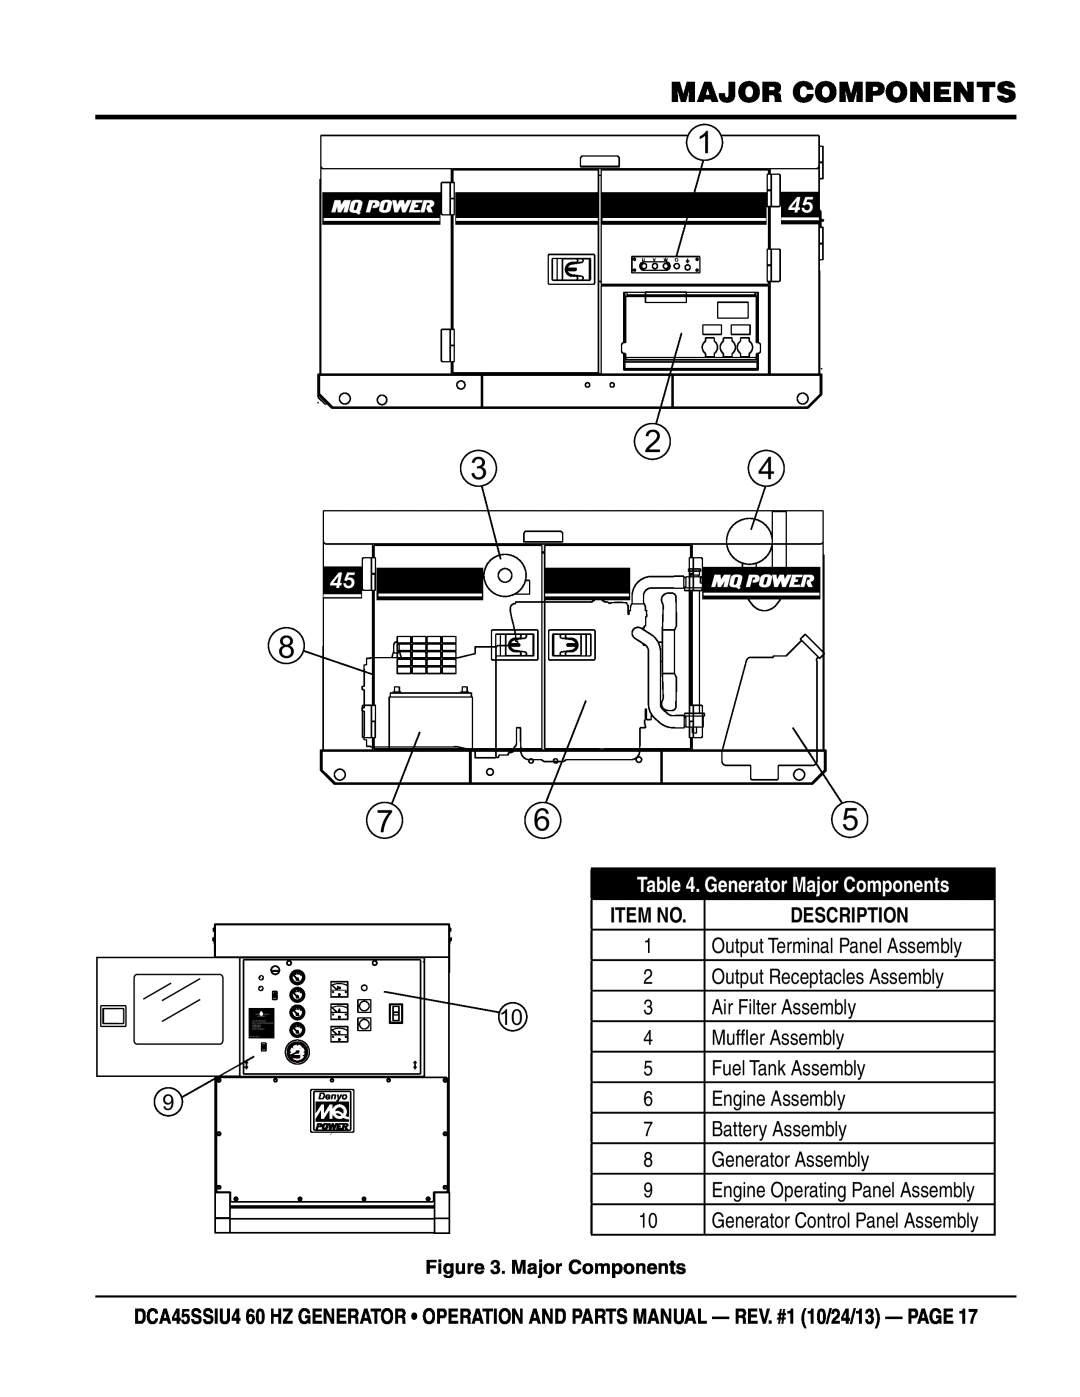 Multiquip dca45ssiu4 manual Generator Major Components, Item No 